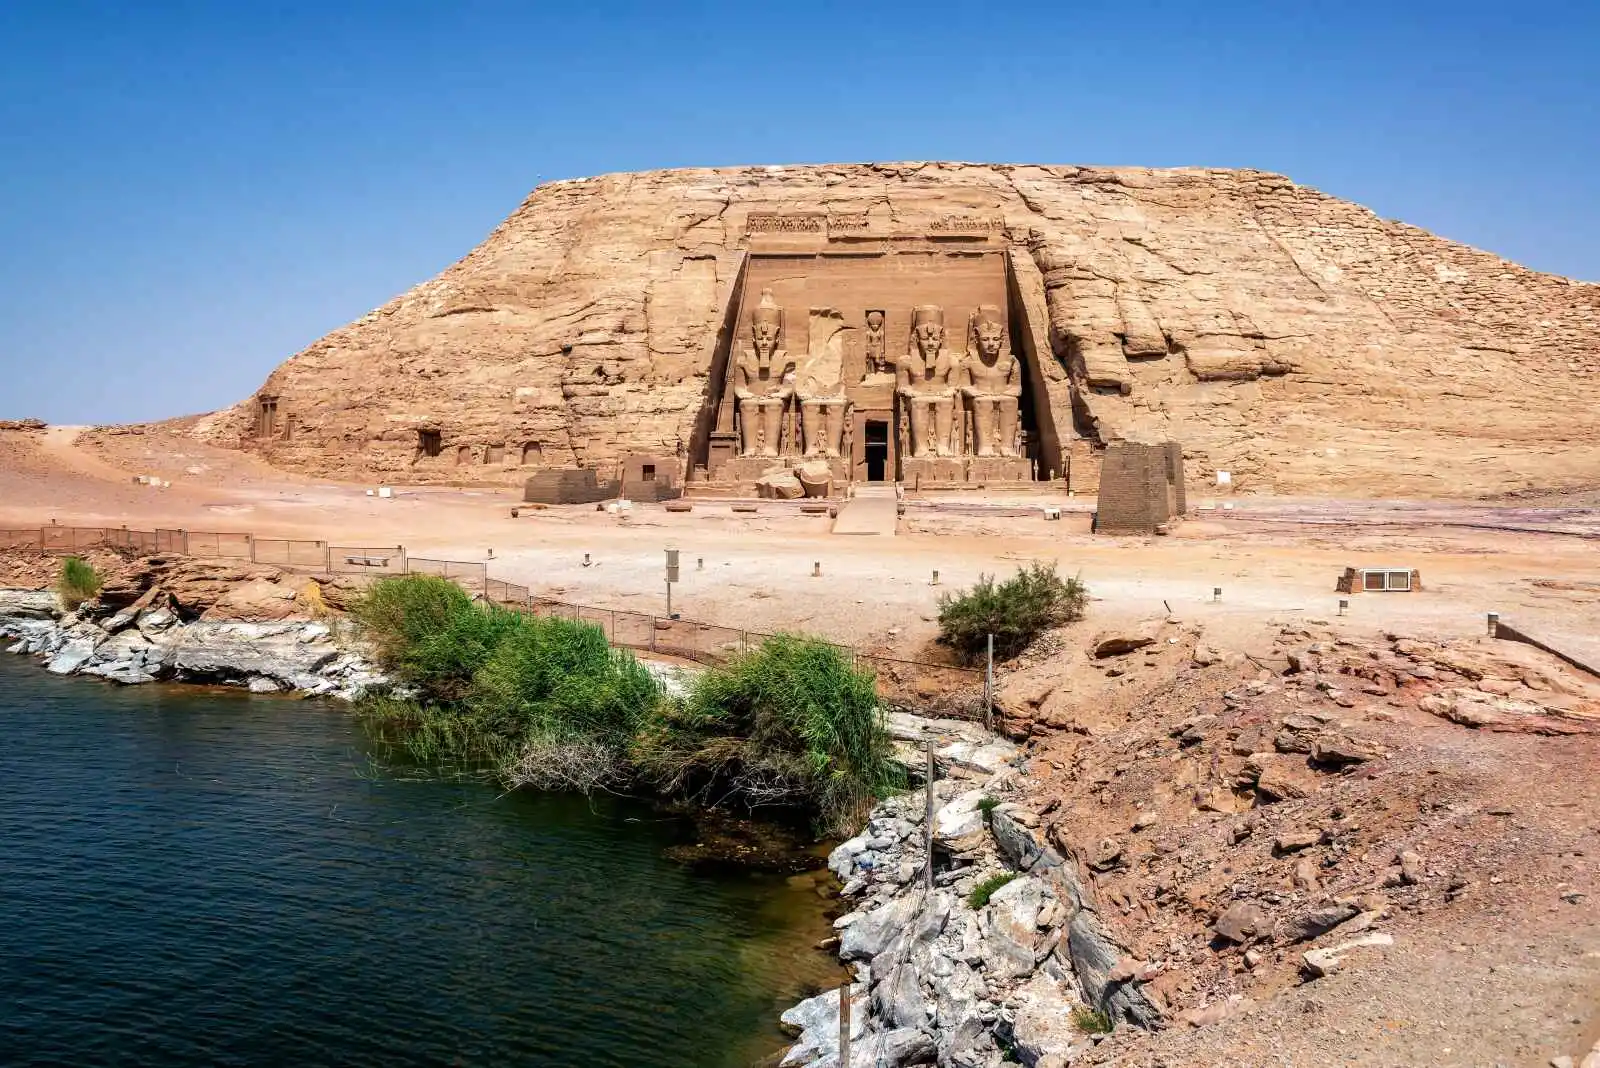 Vue du temple d'Abou Simbel et de la rive du lac Nasser en Egypte